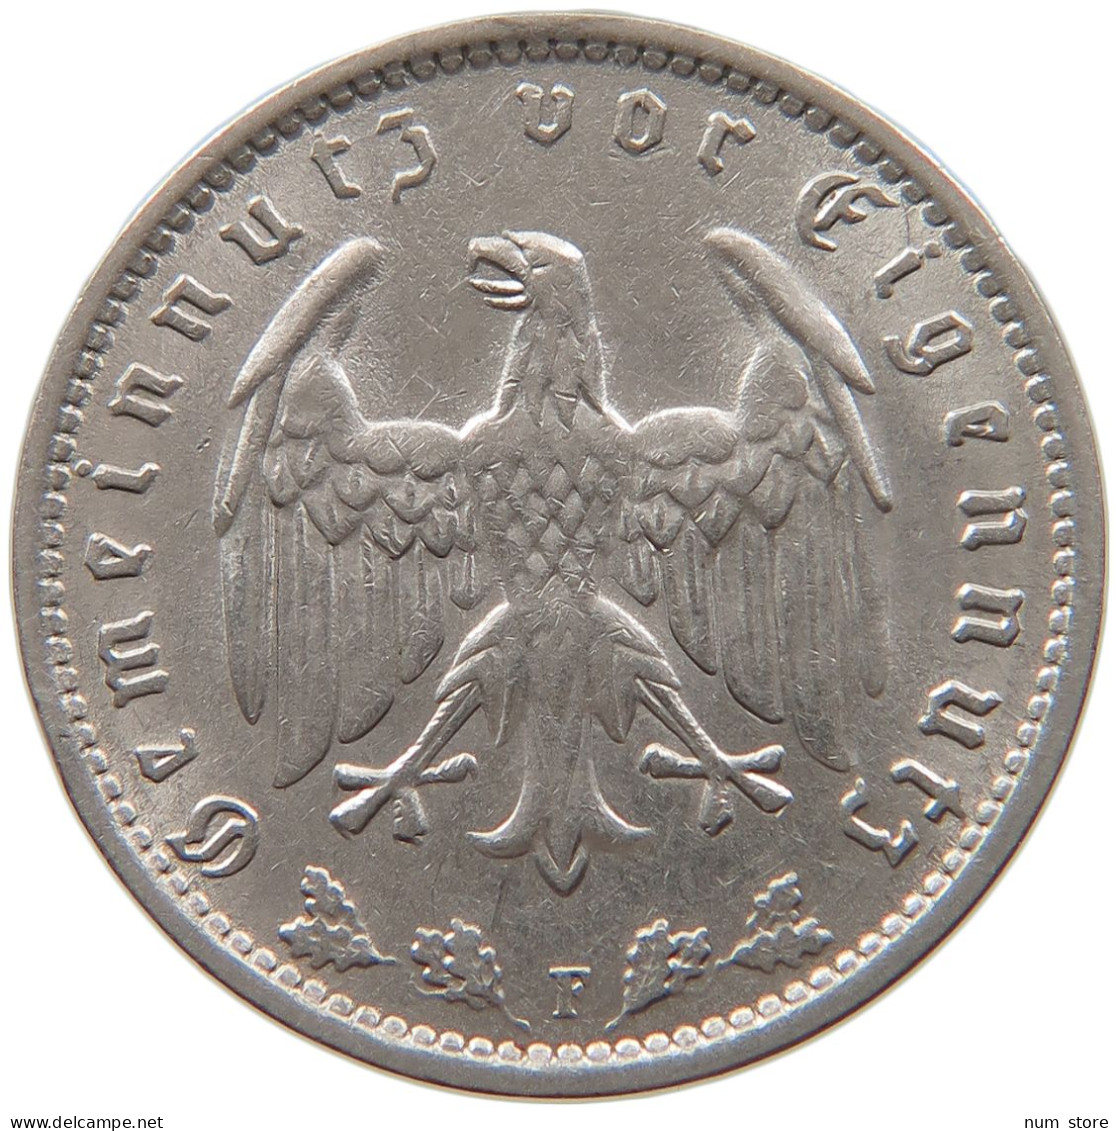 GERMANY REICHSMARK 1934 F #s087 0613 - 1 Reichsmark